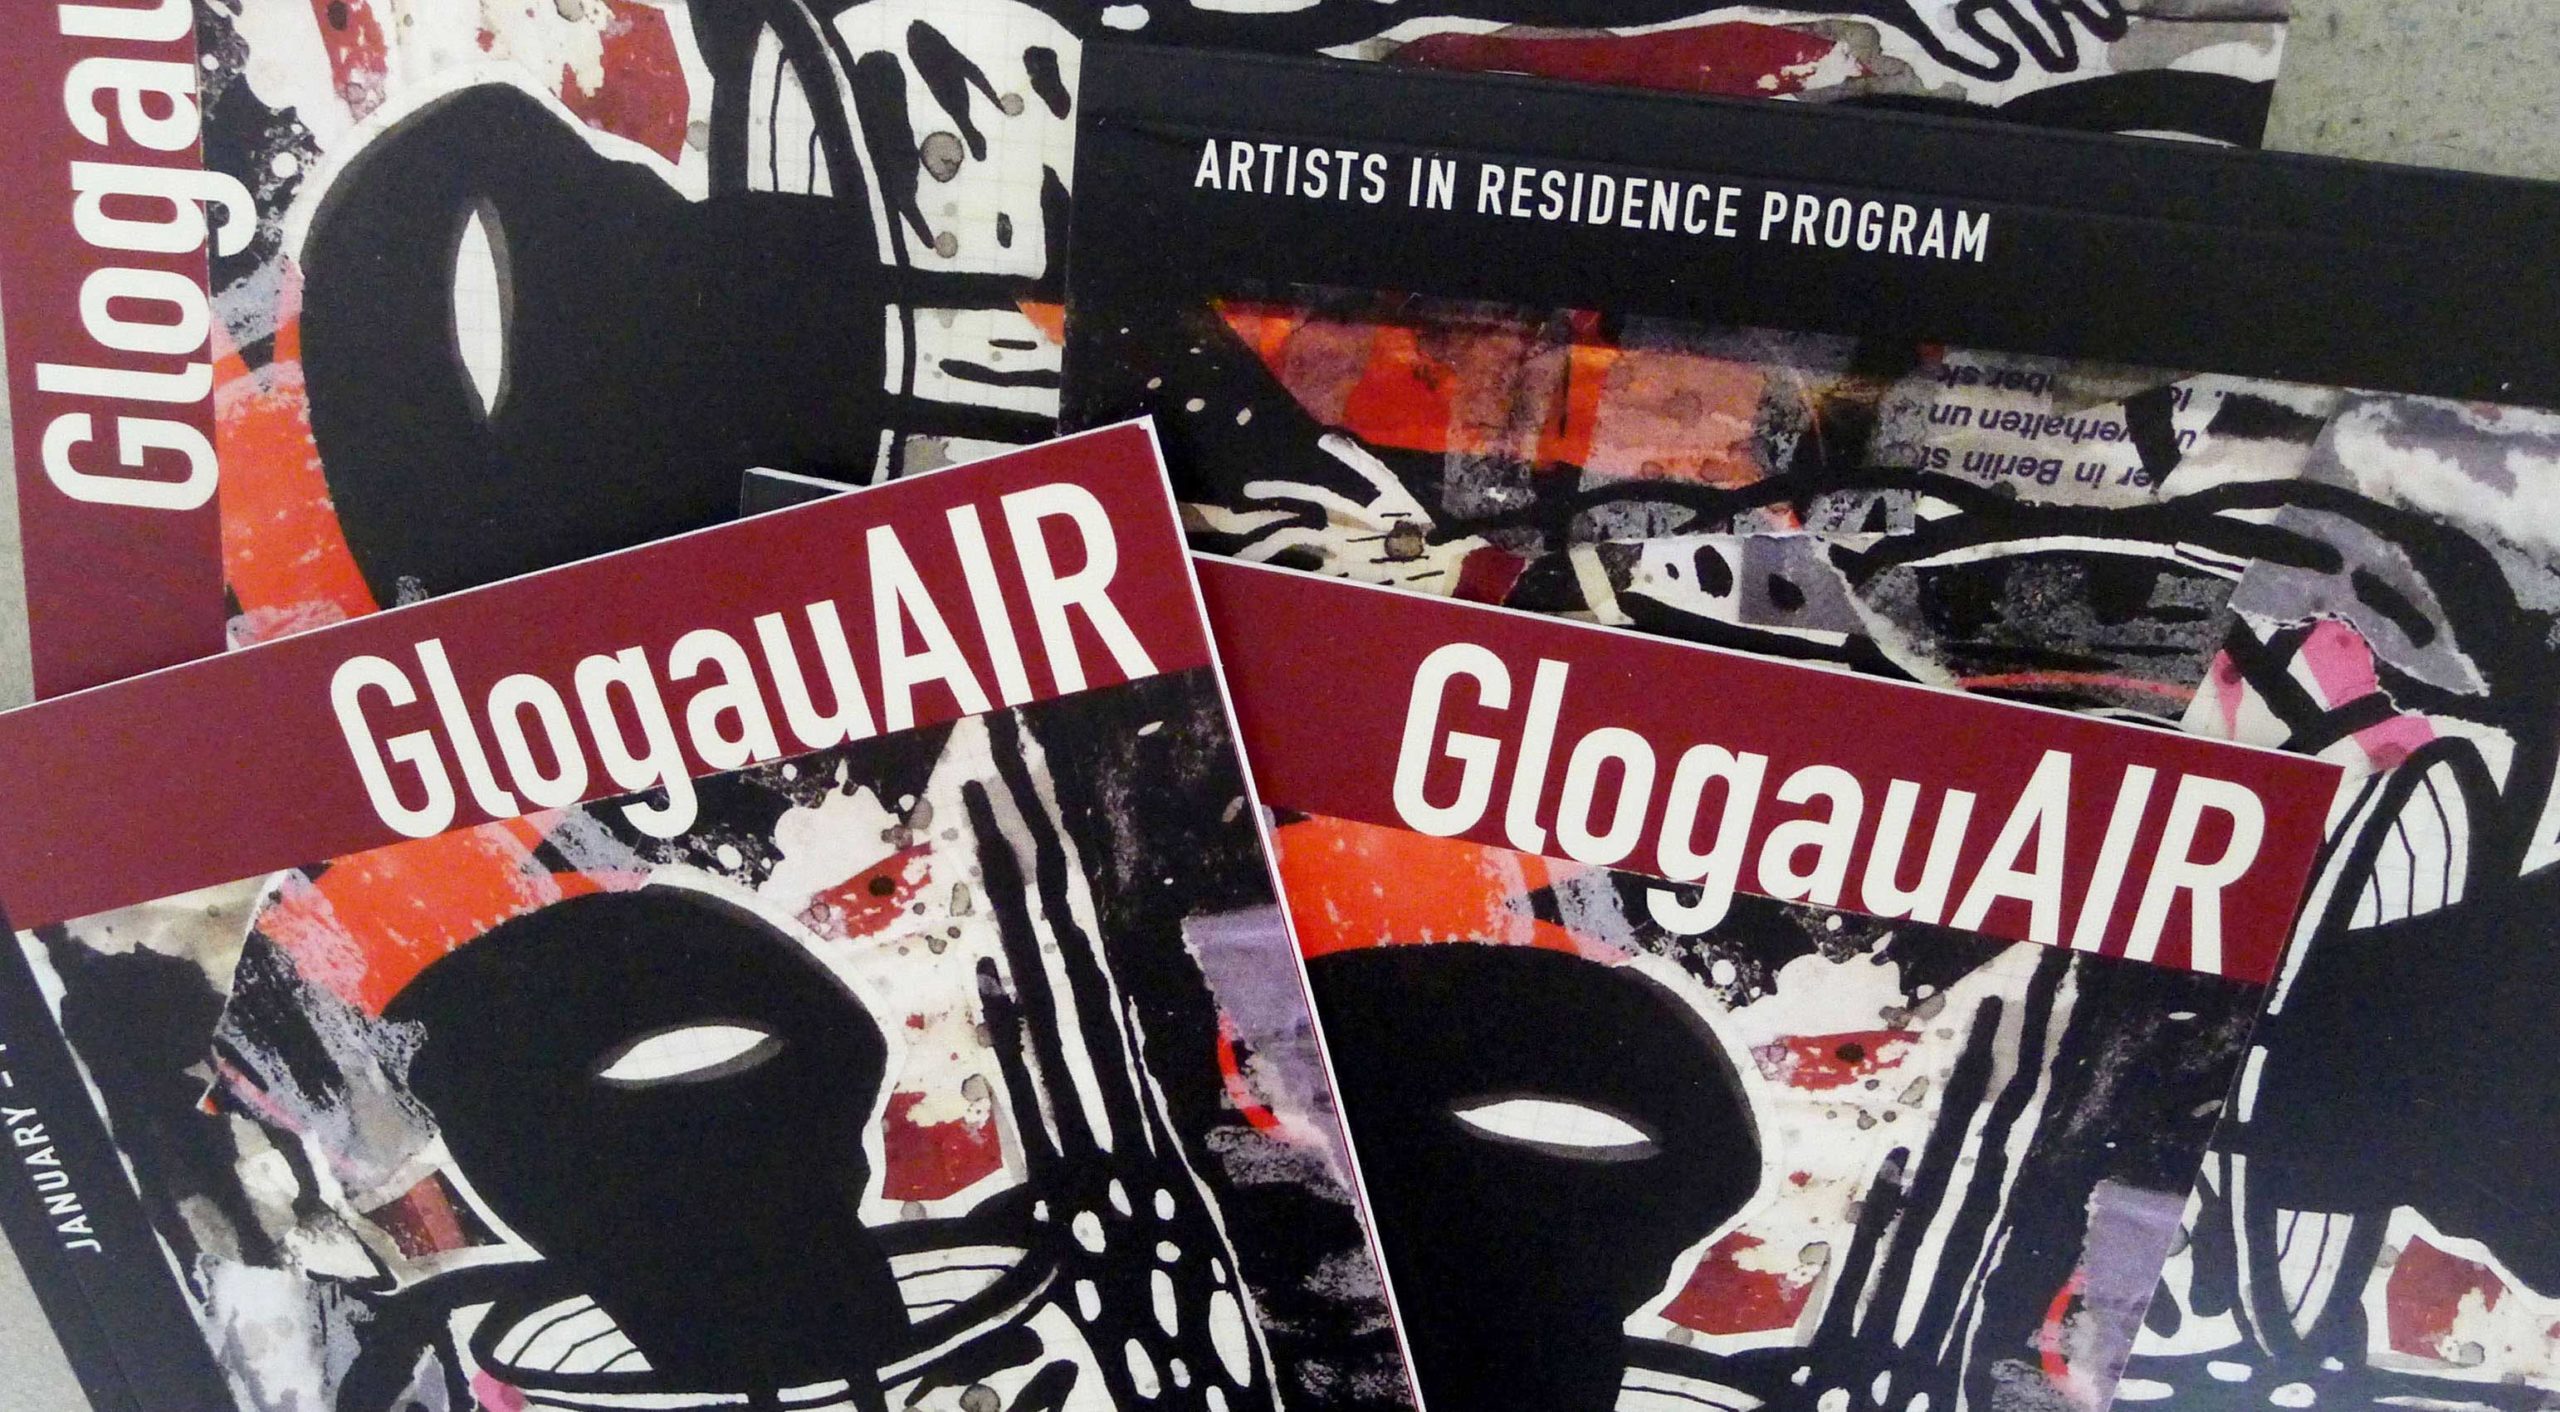 Catalogue de l'exposition Open Studios, présentée en mars et avril 2021 à GlogauAir Artist Residency, Berlin.